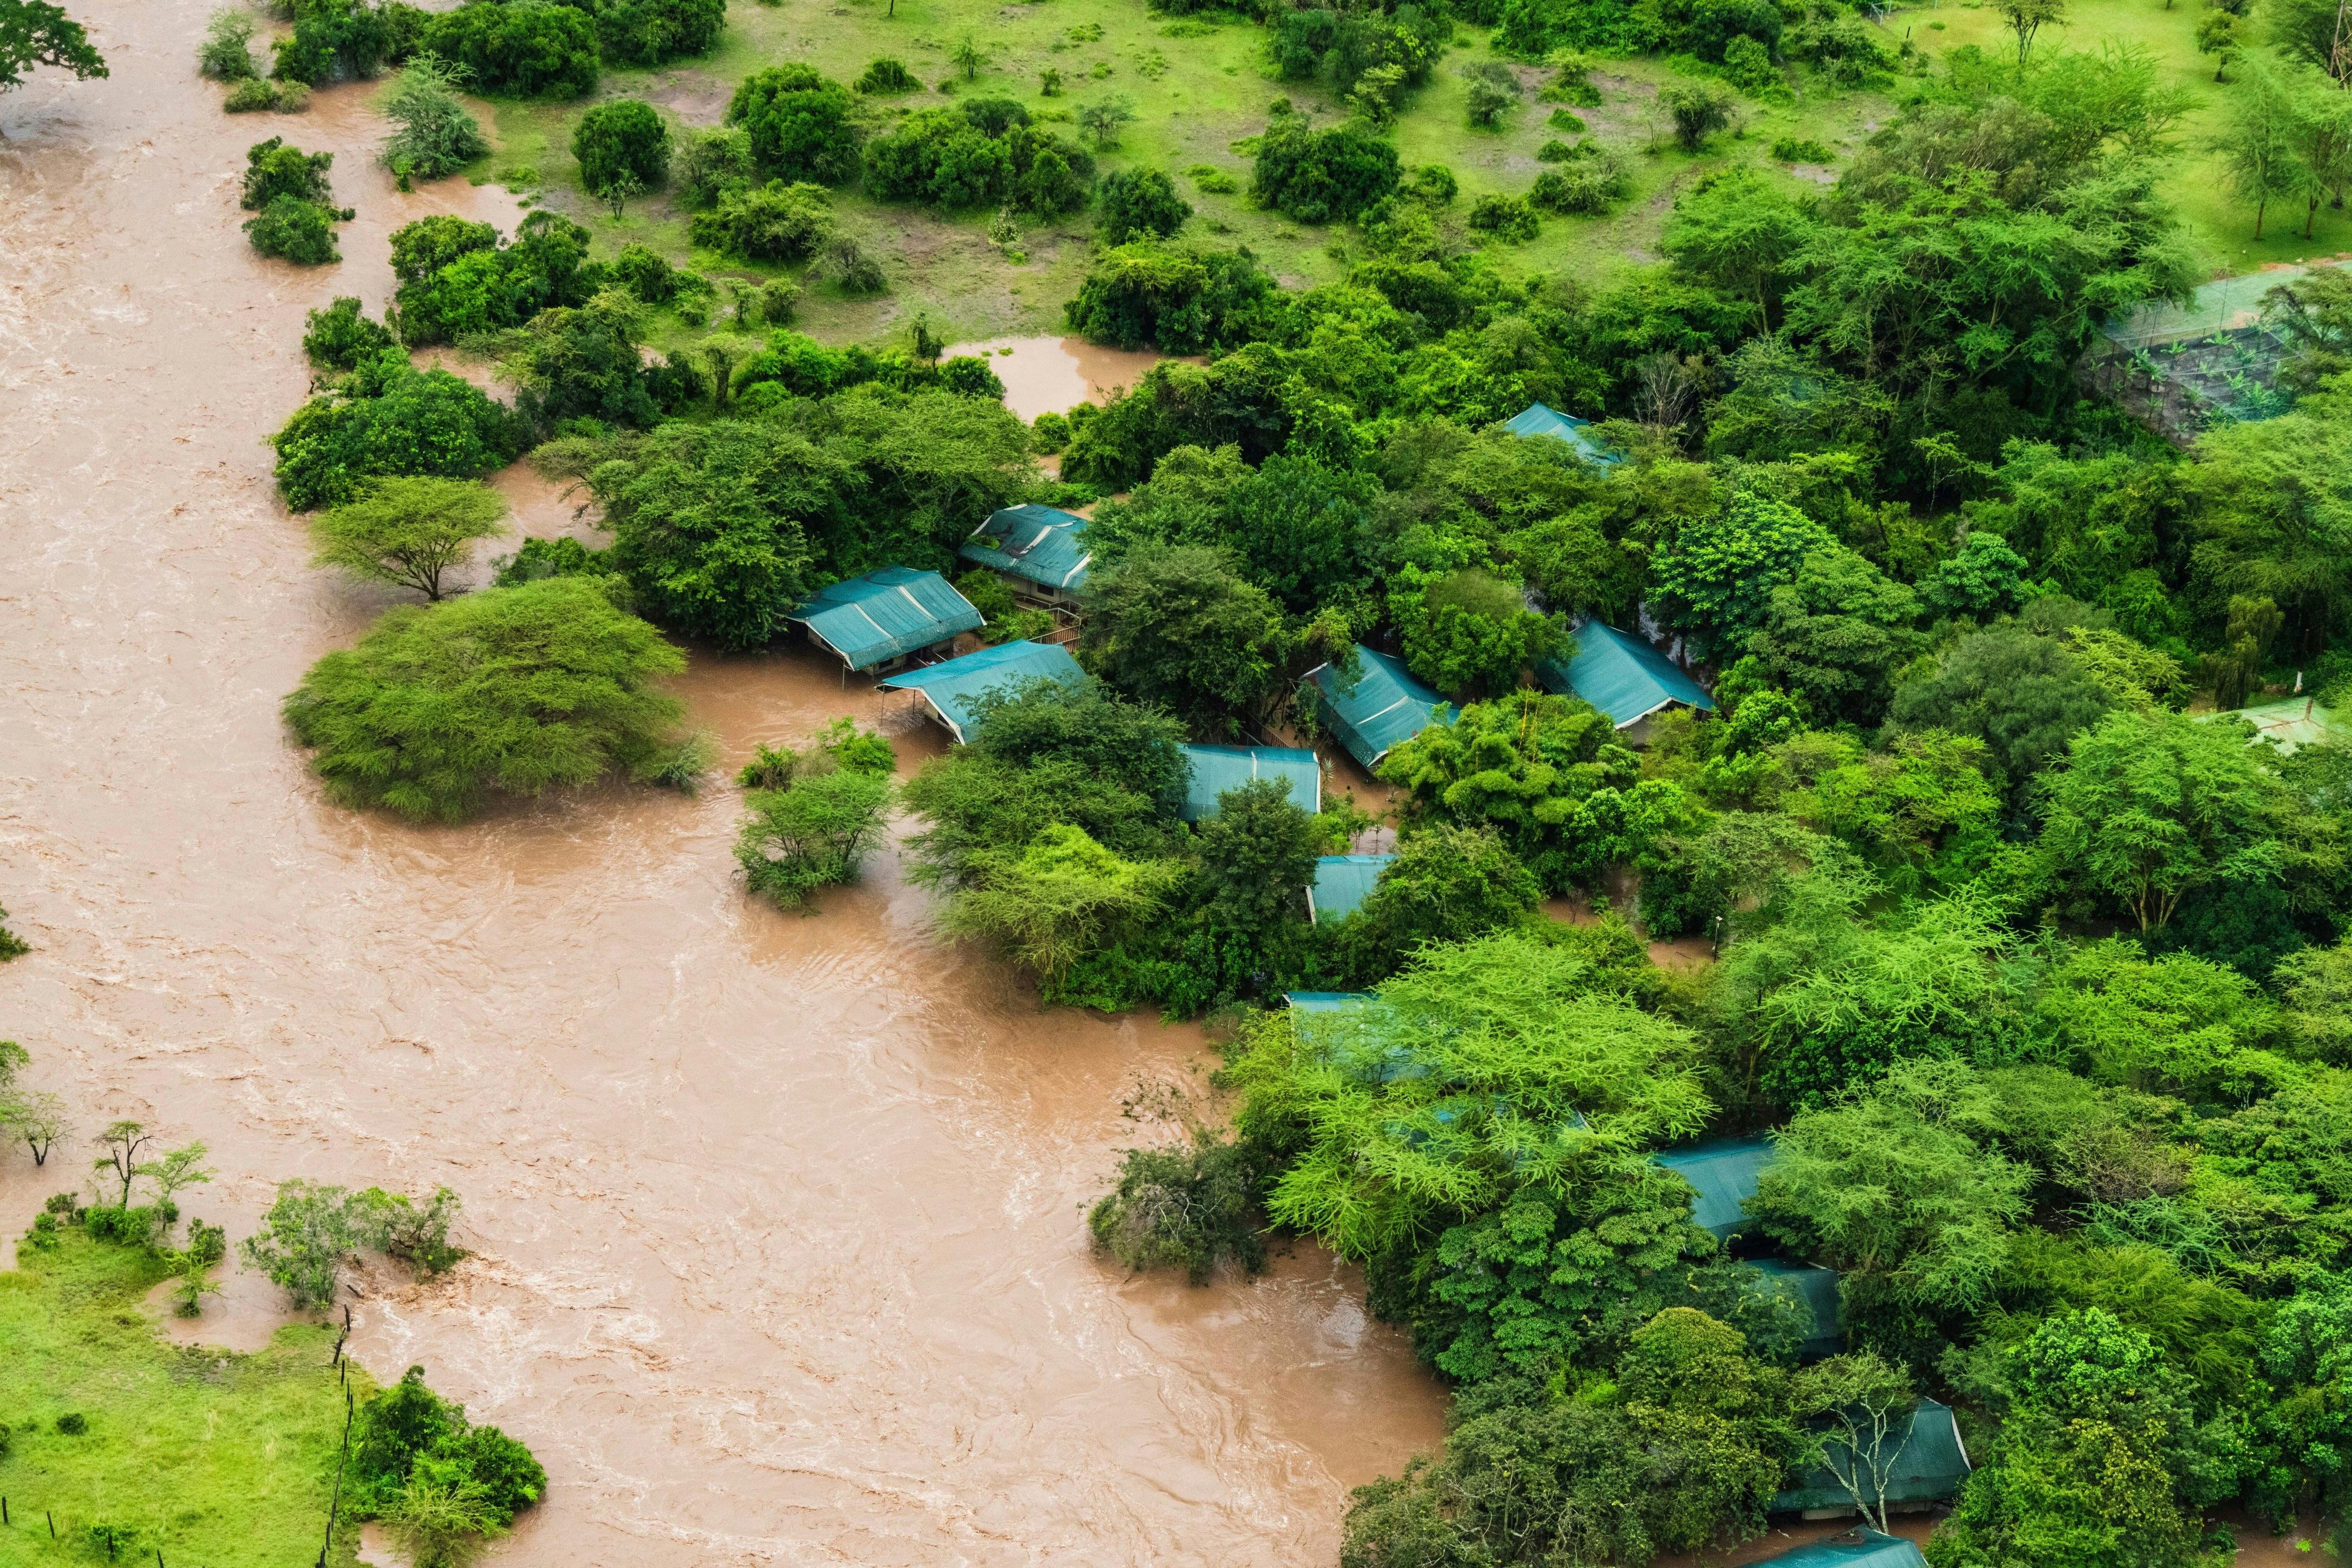 nach heftigen regenfällen: mindestens 100 reisende in berühmtem naturschutzpark eingekesselt